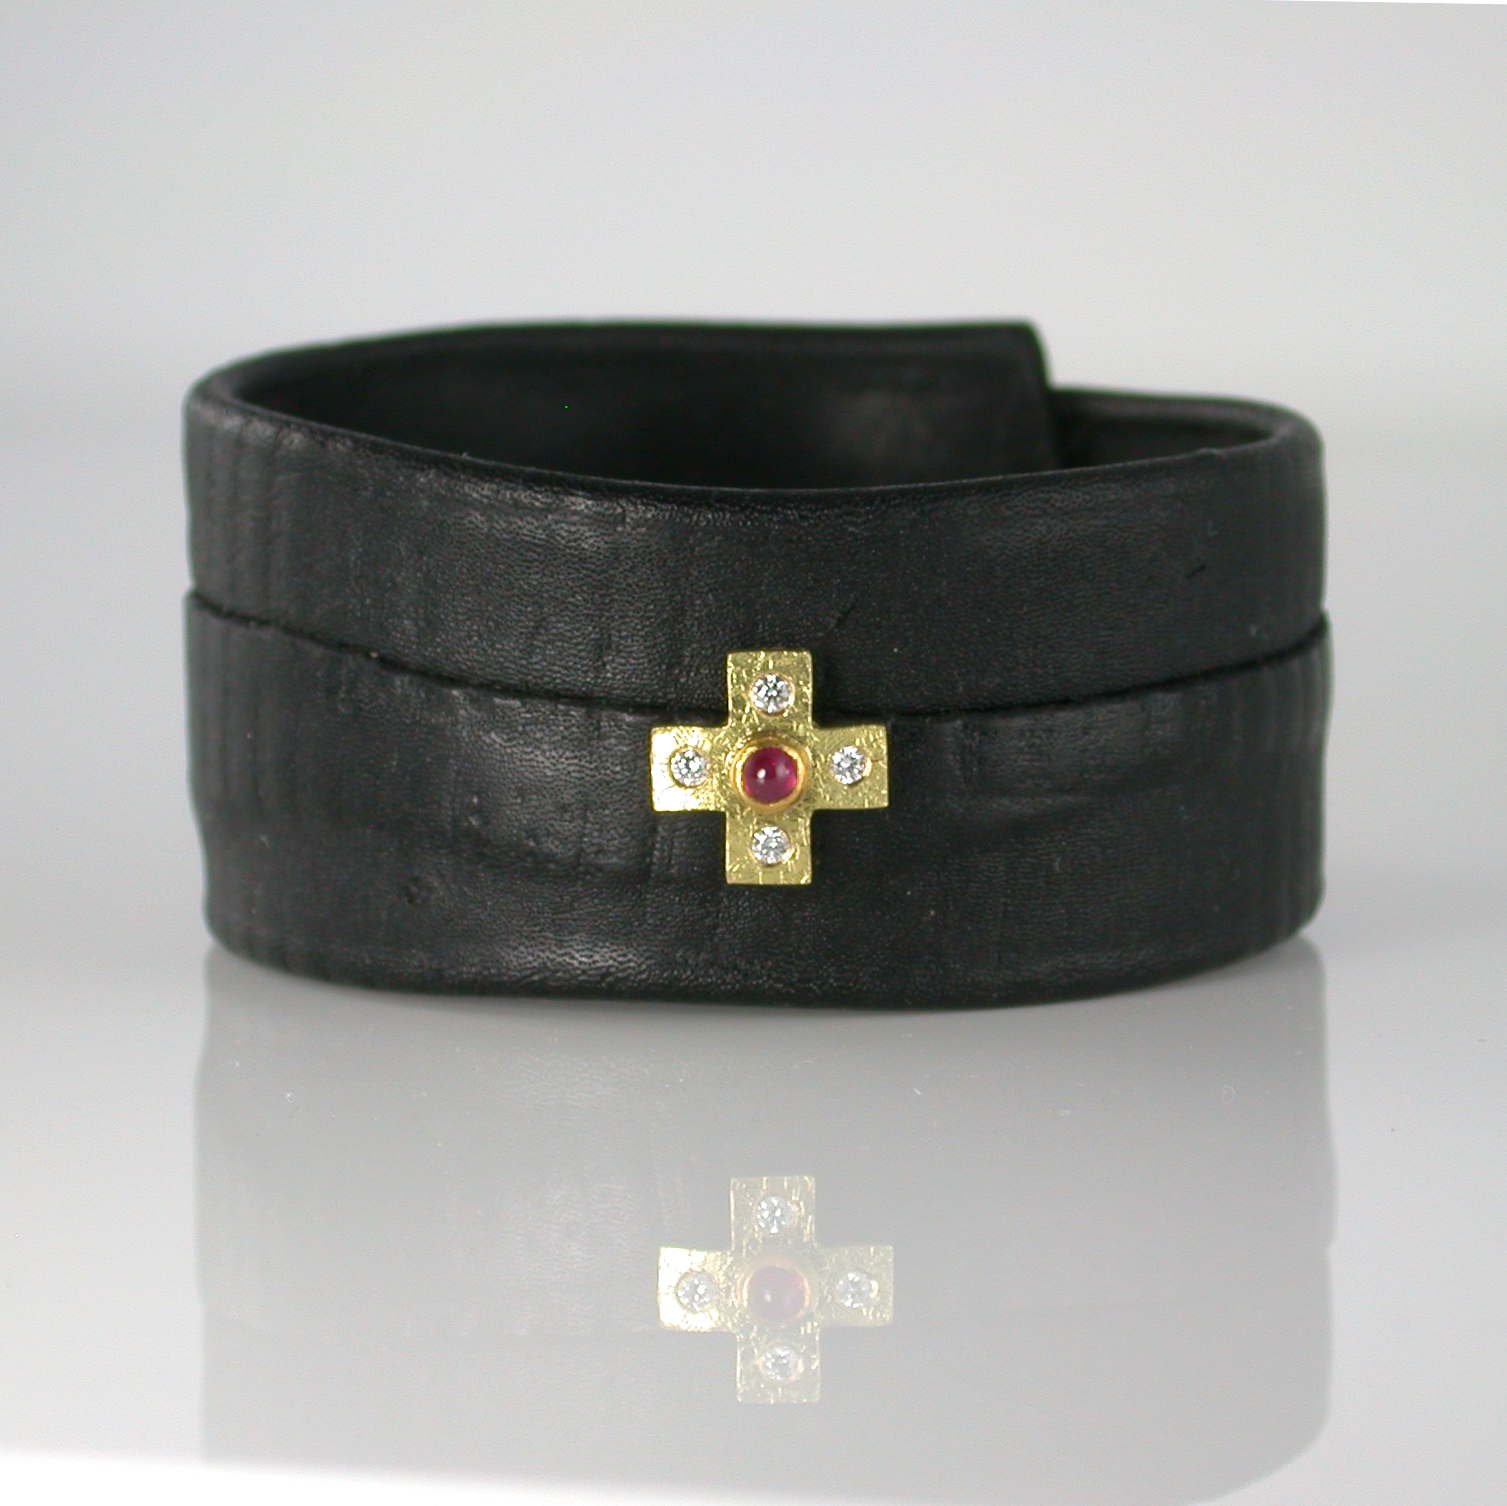 Kangaroo leather bracelet with a cross by Susanne Lanng - Gl. Skagen